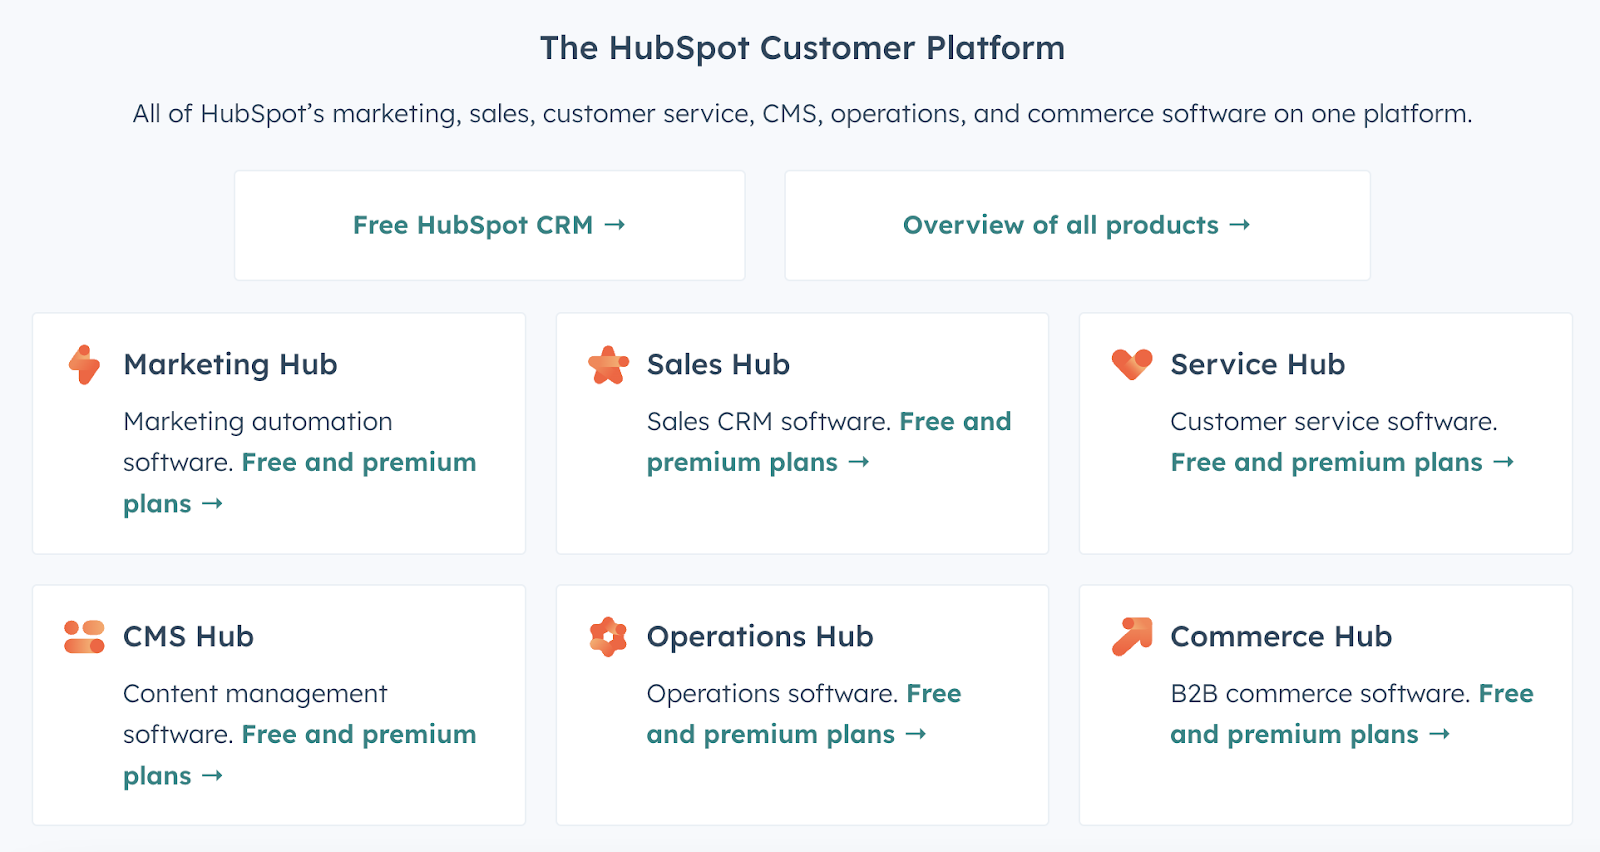 The HubSpot Customer Platform